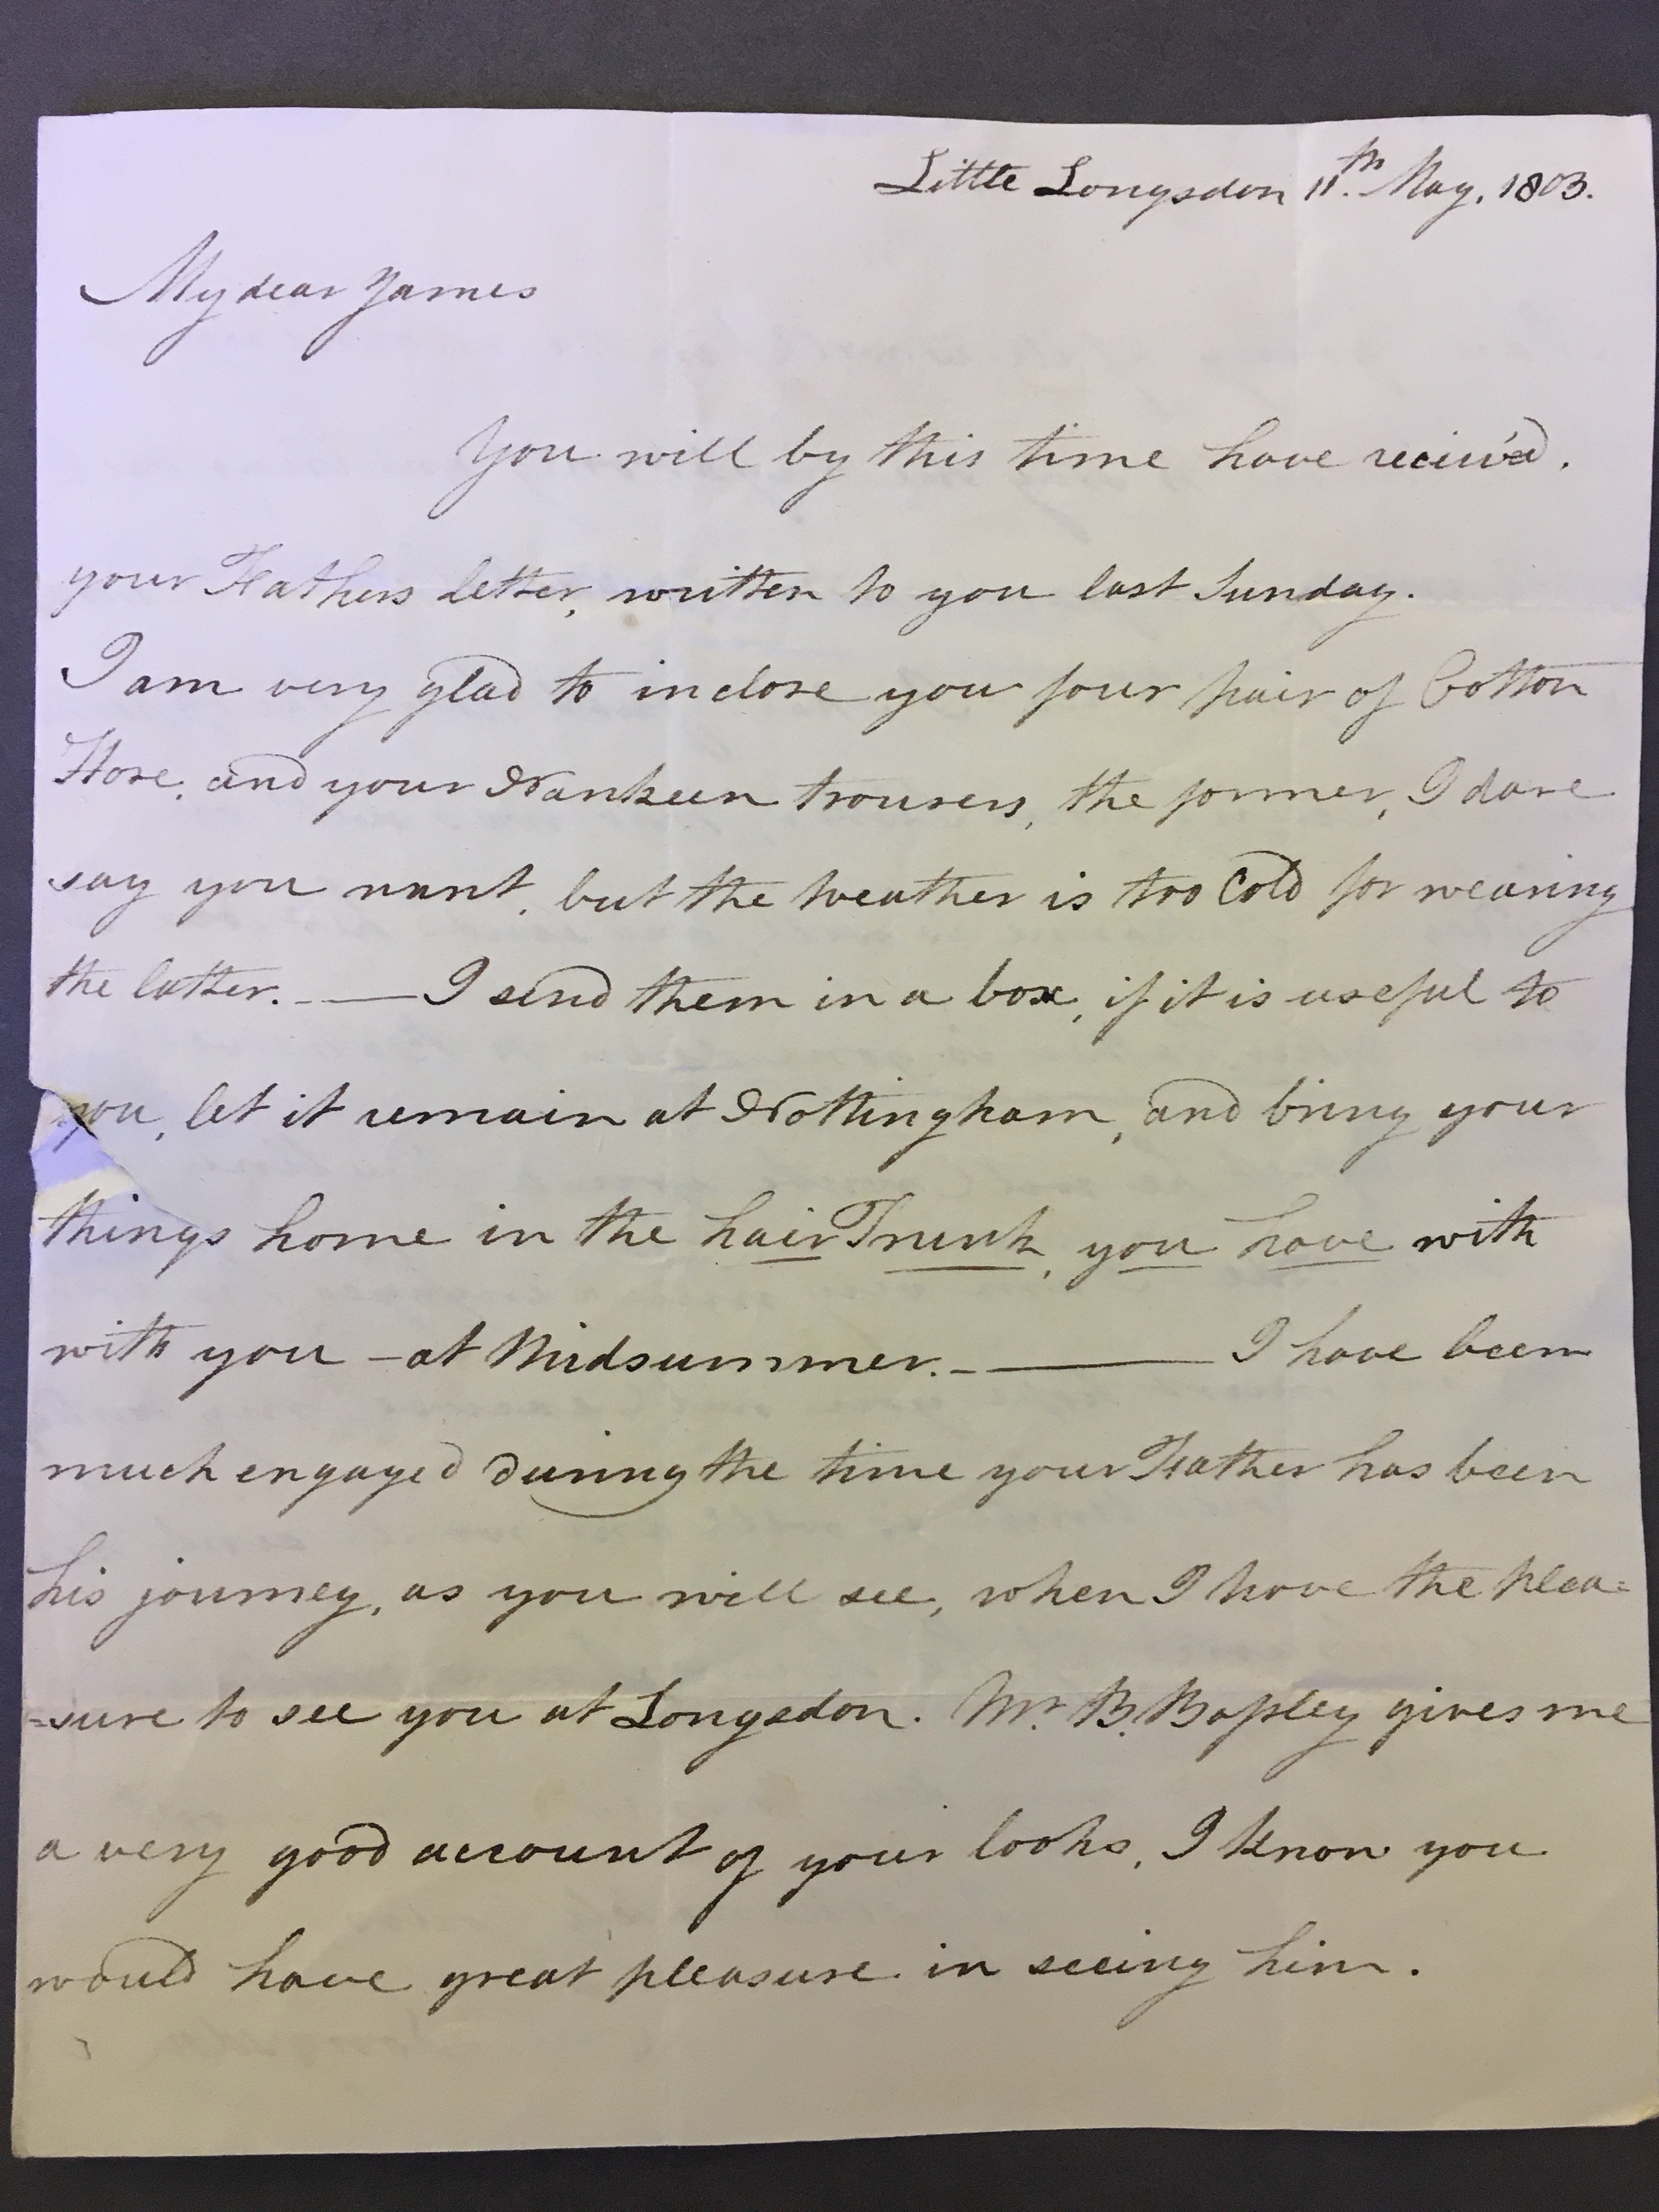 Image #1 of letter: Elizabeth Longsdon to James Longsdon (jnr), 11 May 1803